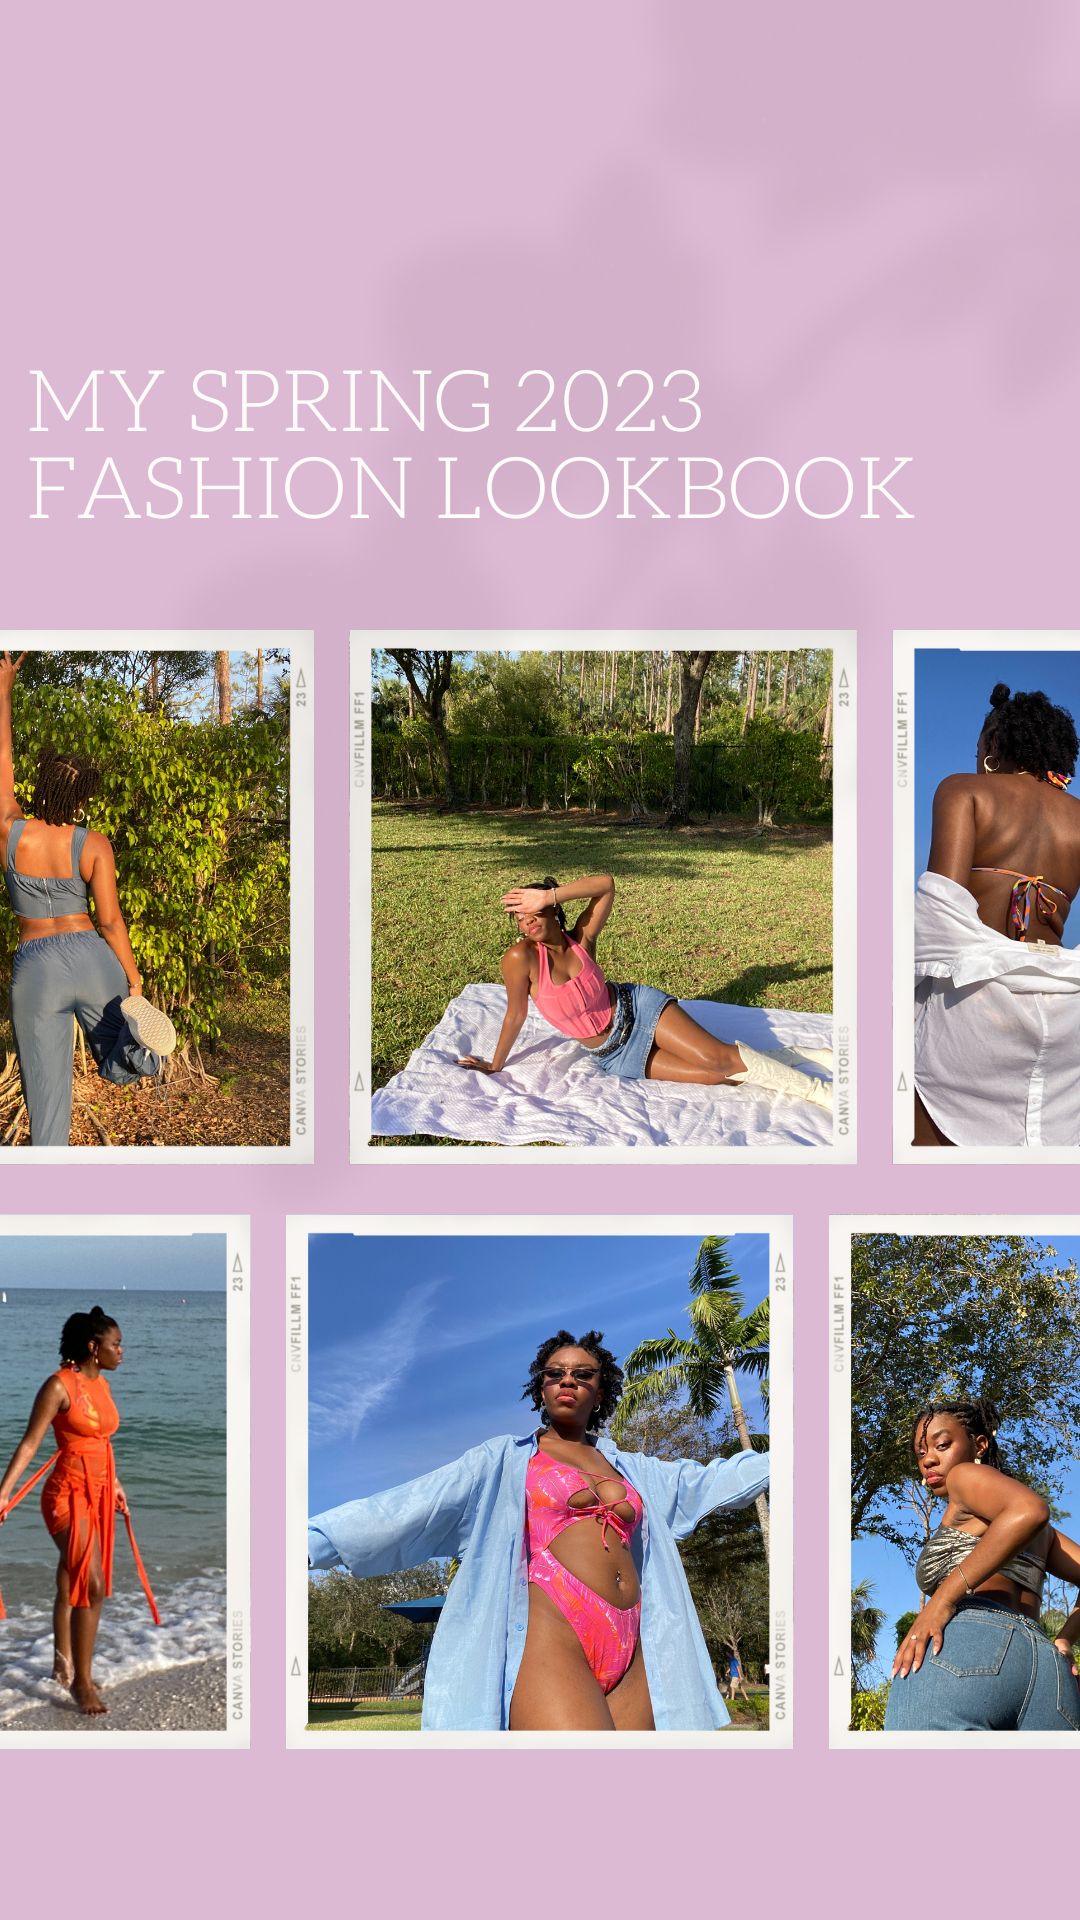 My Spring 2023 Fashion Lookbook